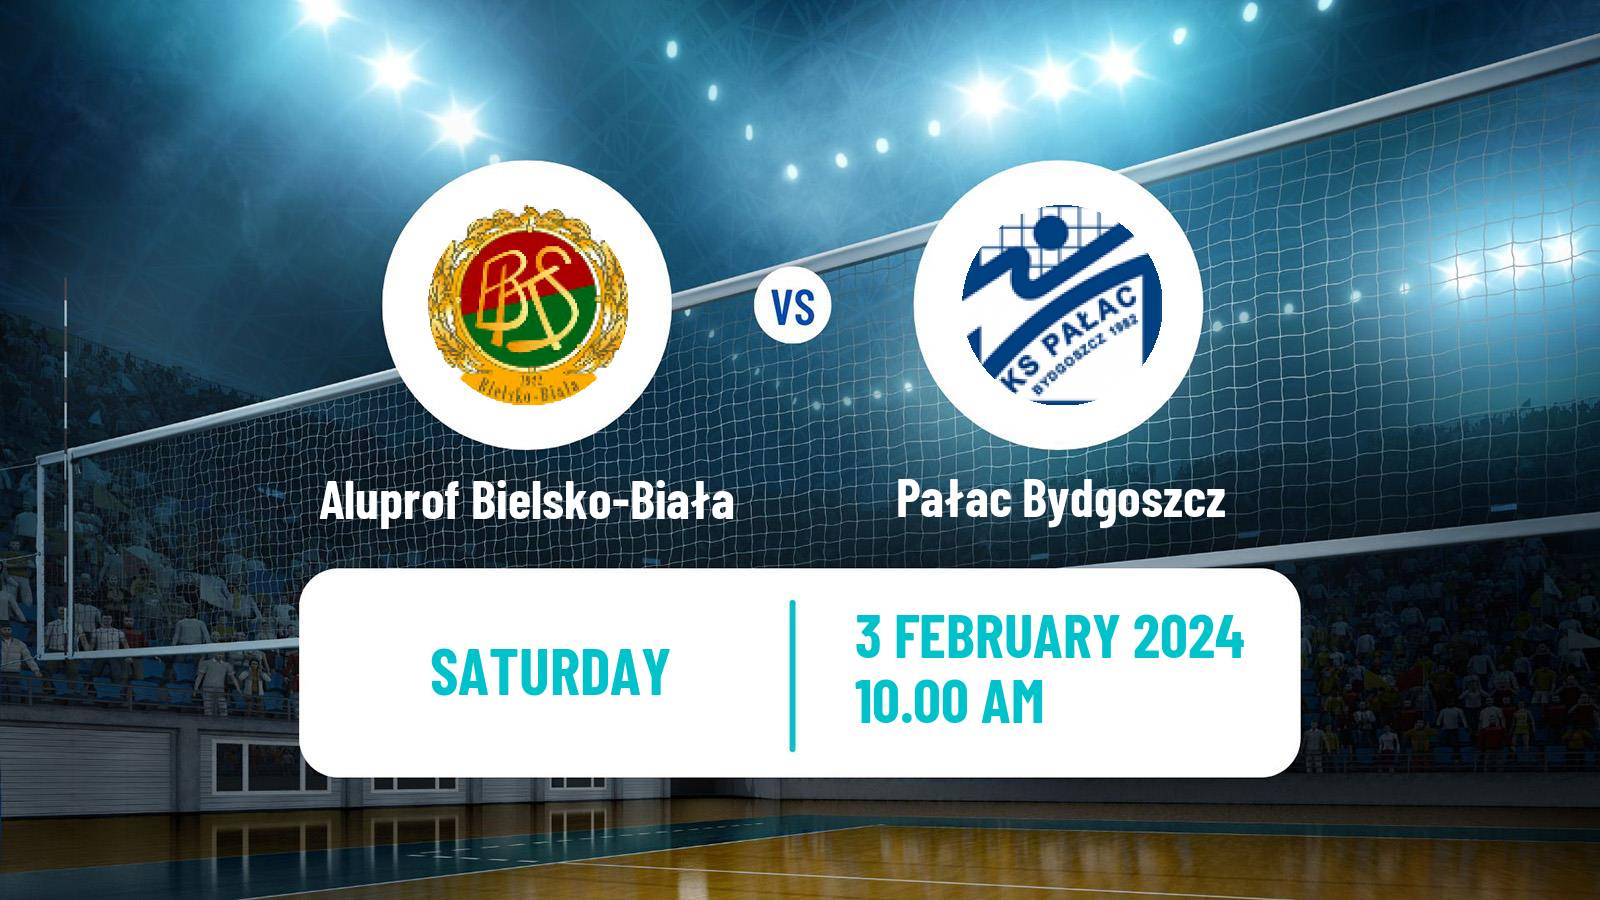 Volleyball Polish Liga Siatkowki Women Aluprof Bielsko-Biała - Pałac Bydgoszcz